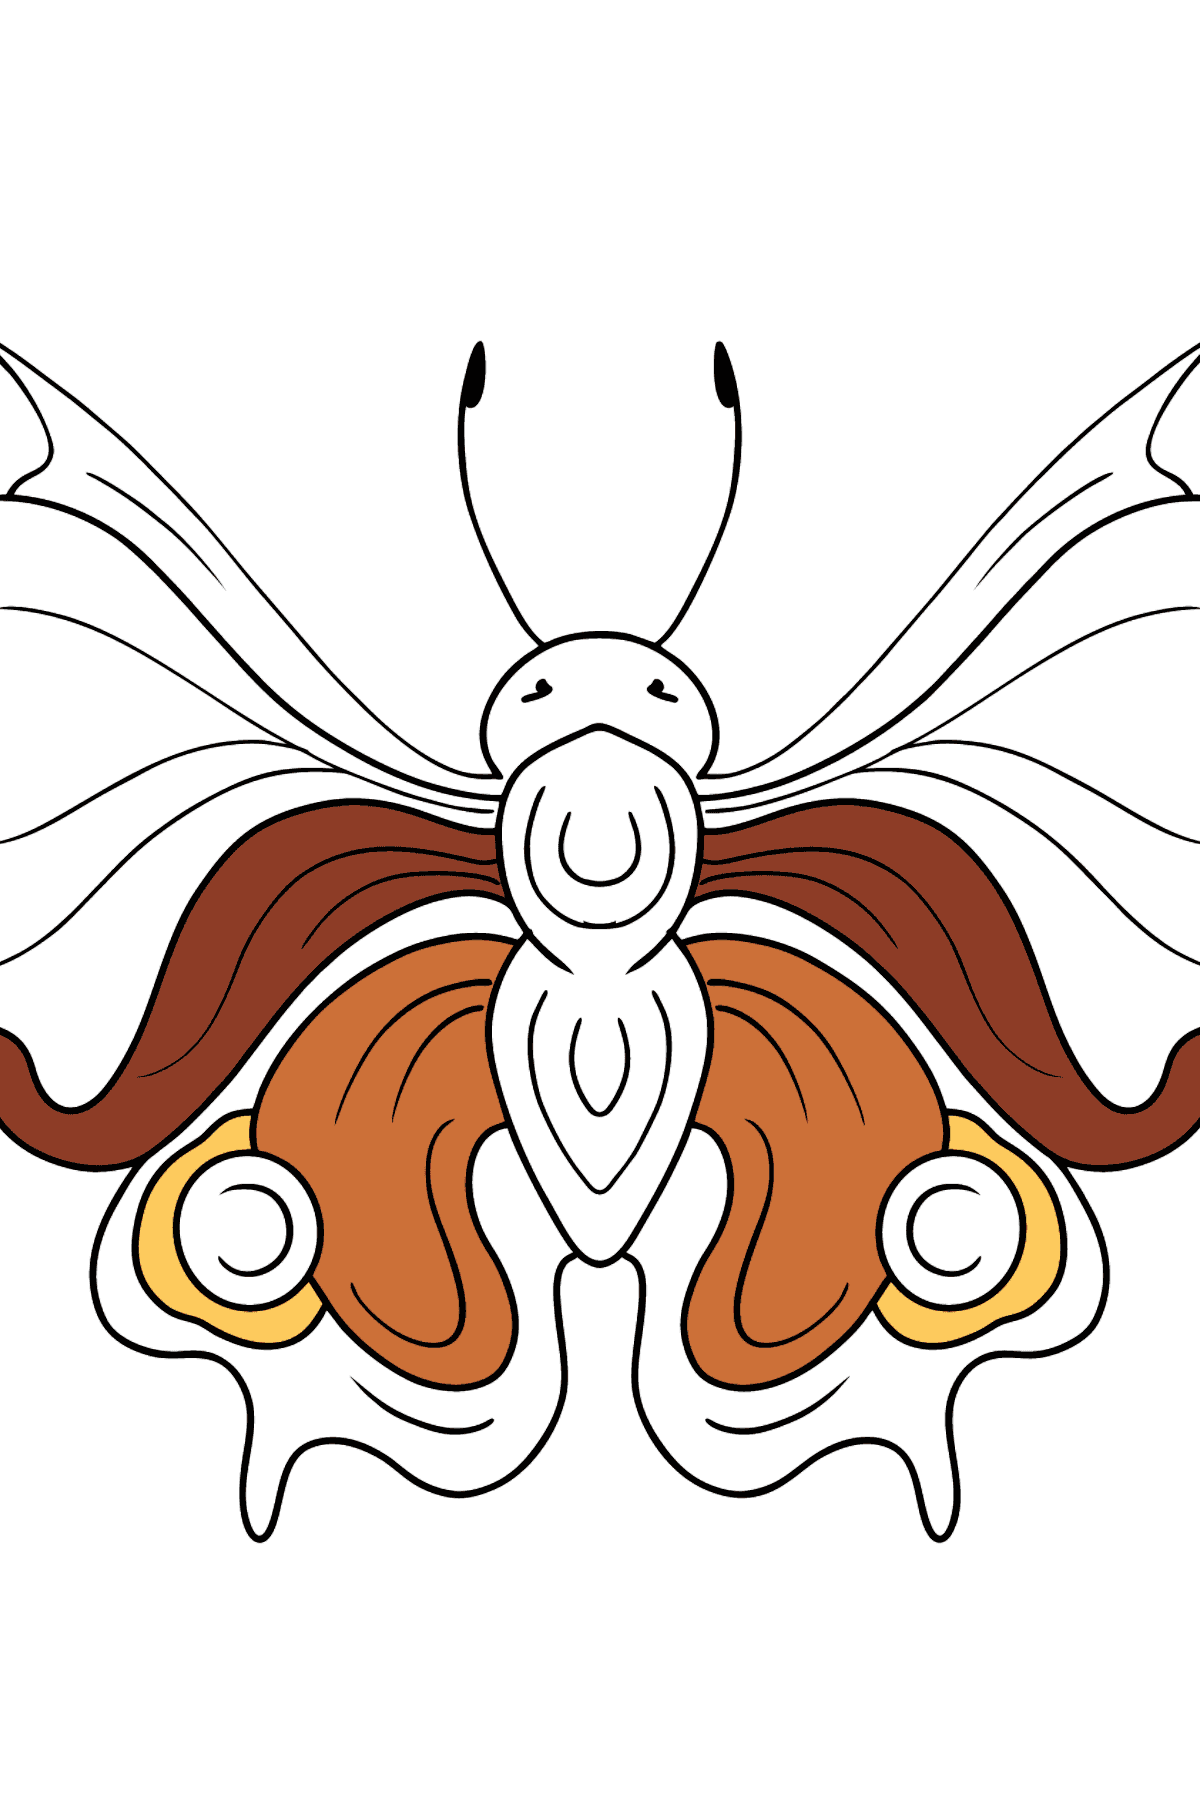 Dibujo de Mariposa pavo real para colorear - Dibujos para Colorear para Niños